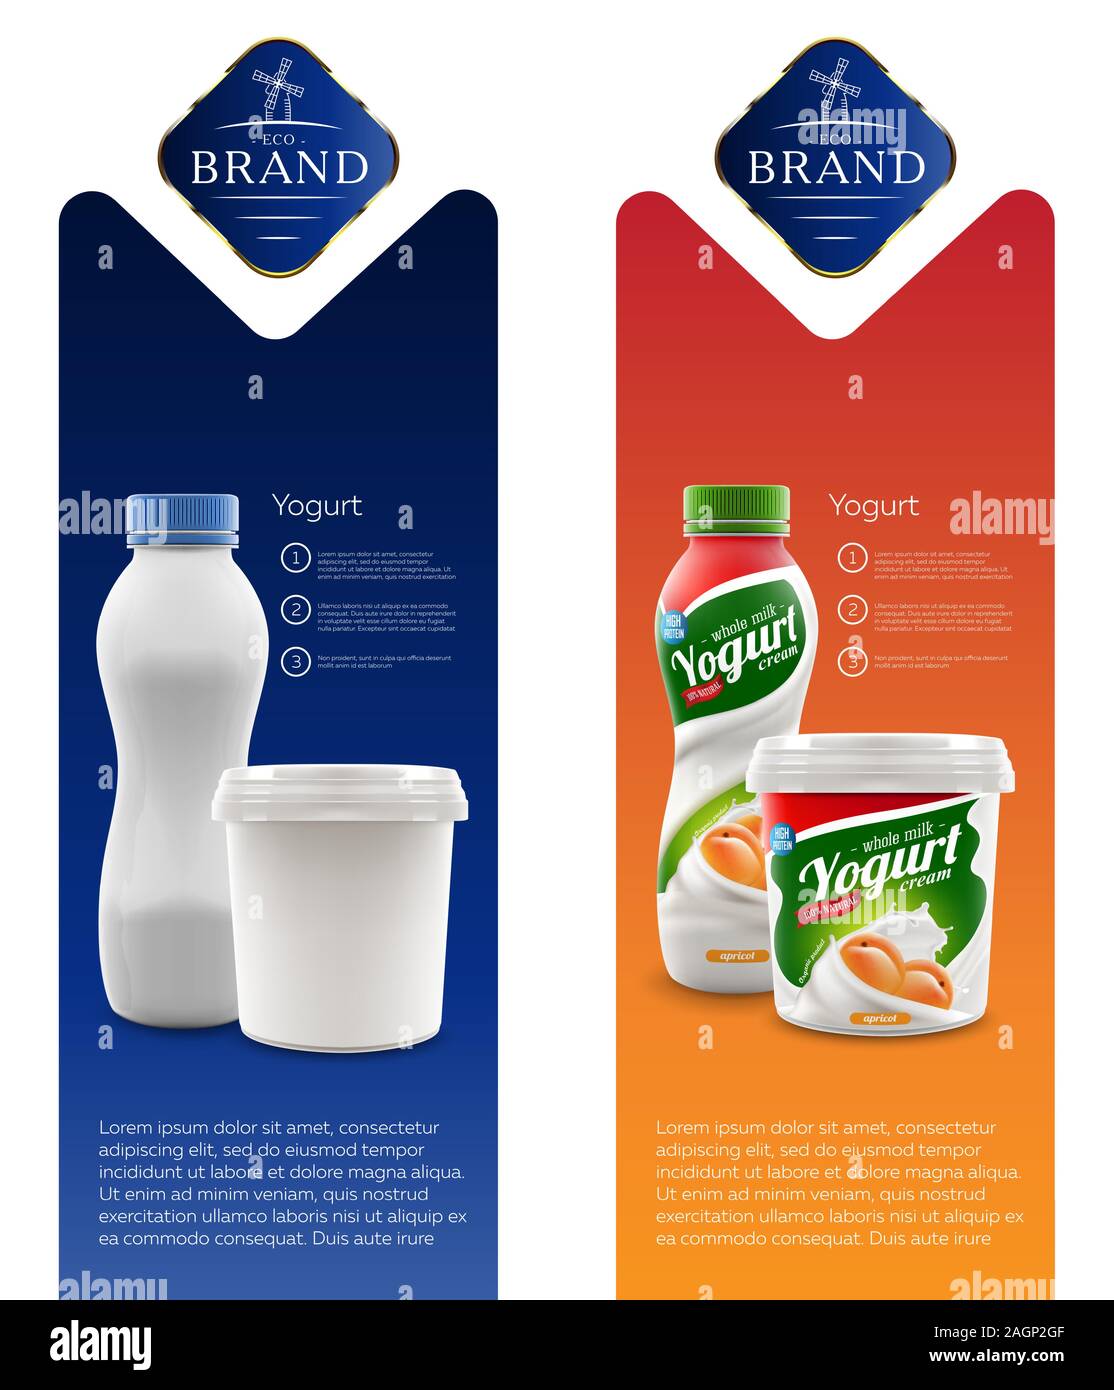 Aprikose Joghurt Marke Neue Verpackung Isolierte Design Fur Milch Joghurt Oder Creme Produkt Branding Oder Werbung Design Stock Vektorgrafik Alamy